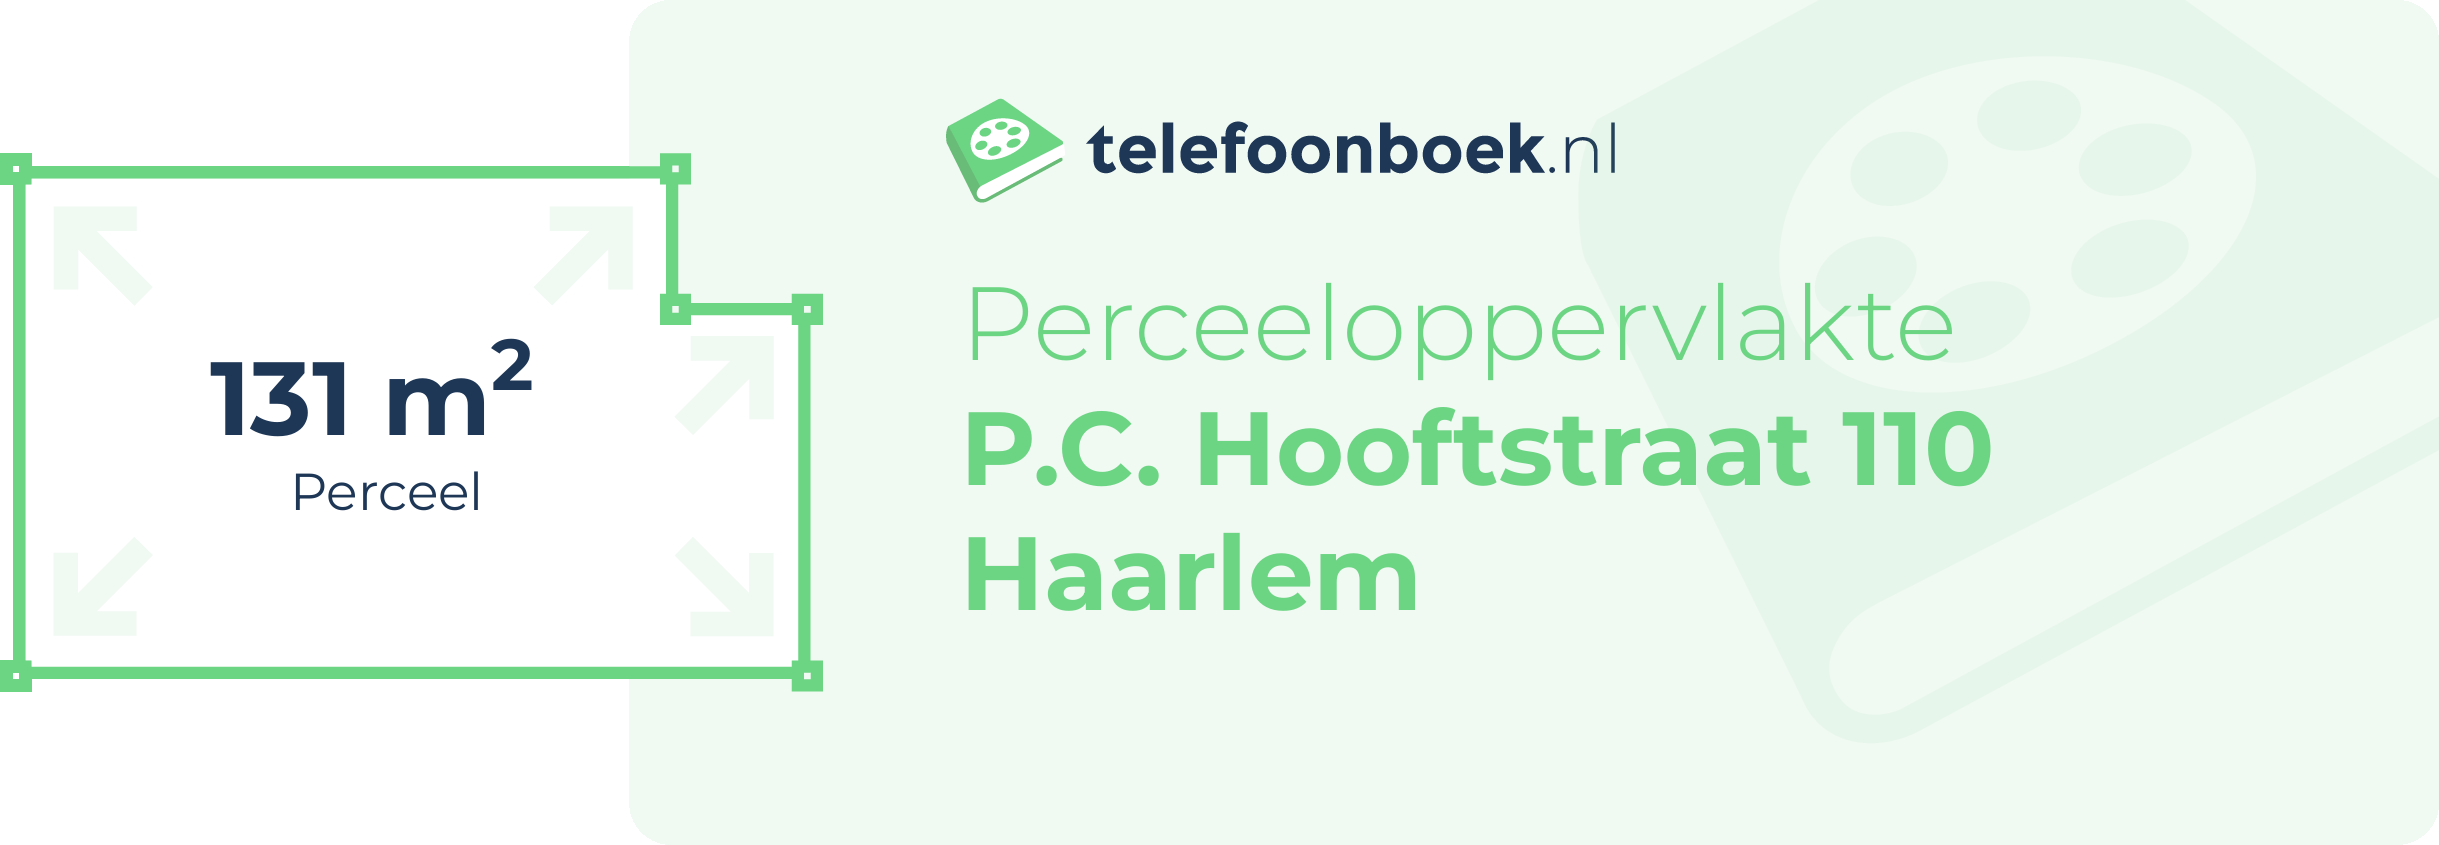 Perceeloppervlakte P.C. Hooftstraat 110 Haarlem